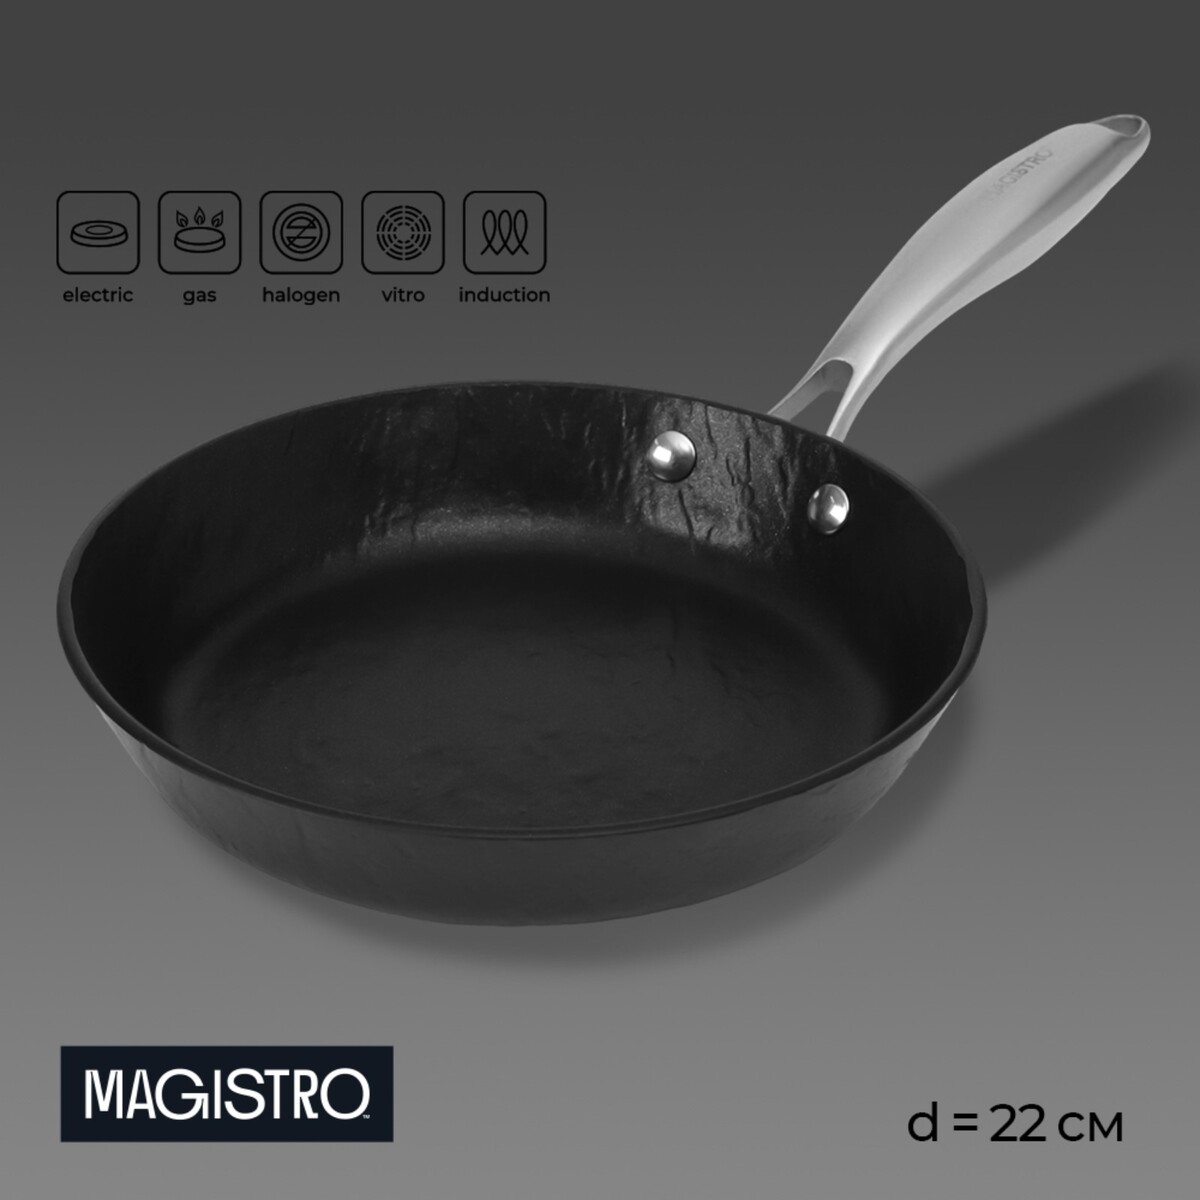 Сковорода magistro rock stone, d=22 см, h=4,3 см, антипригарное покрытие, индукция, цвет черный сковорода нержавеющая сталь 28 см антипригарное покрытие катунь общепит кт об са 28 индукция